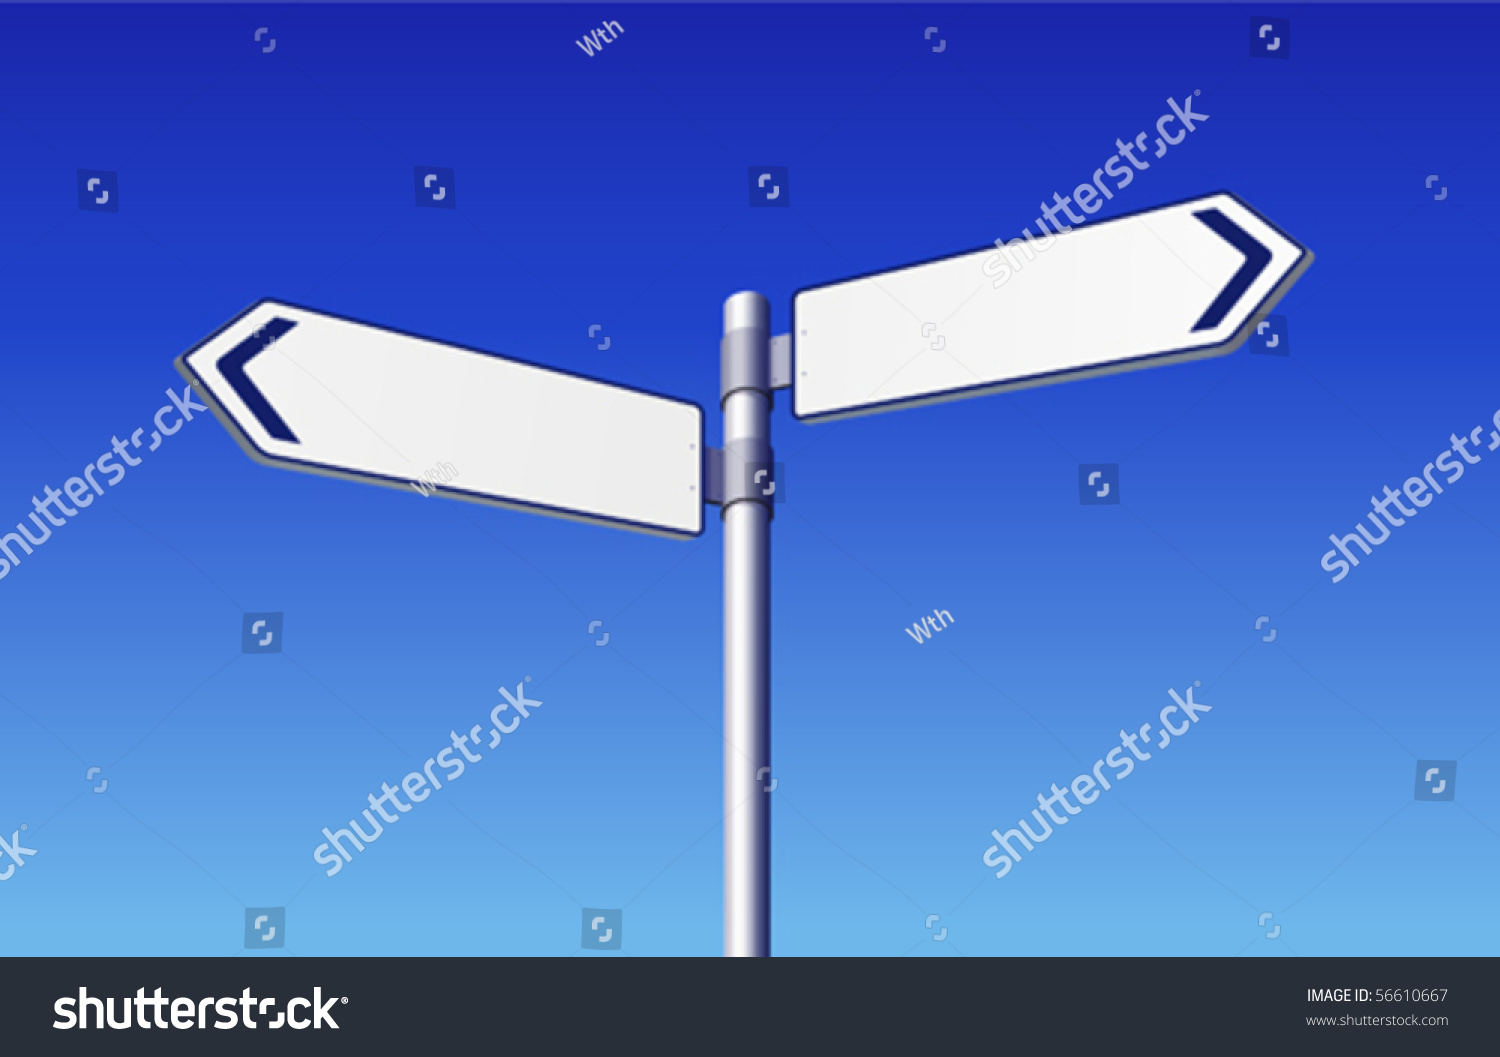 Blank Road Signs Stock Vector Illustration 56610667 : Shutterstock